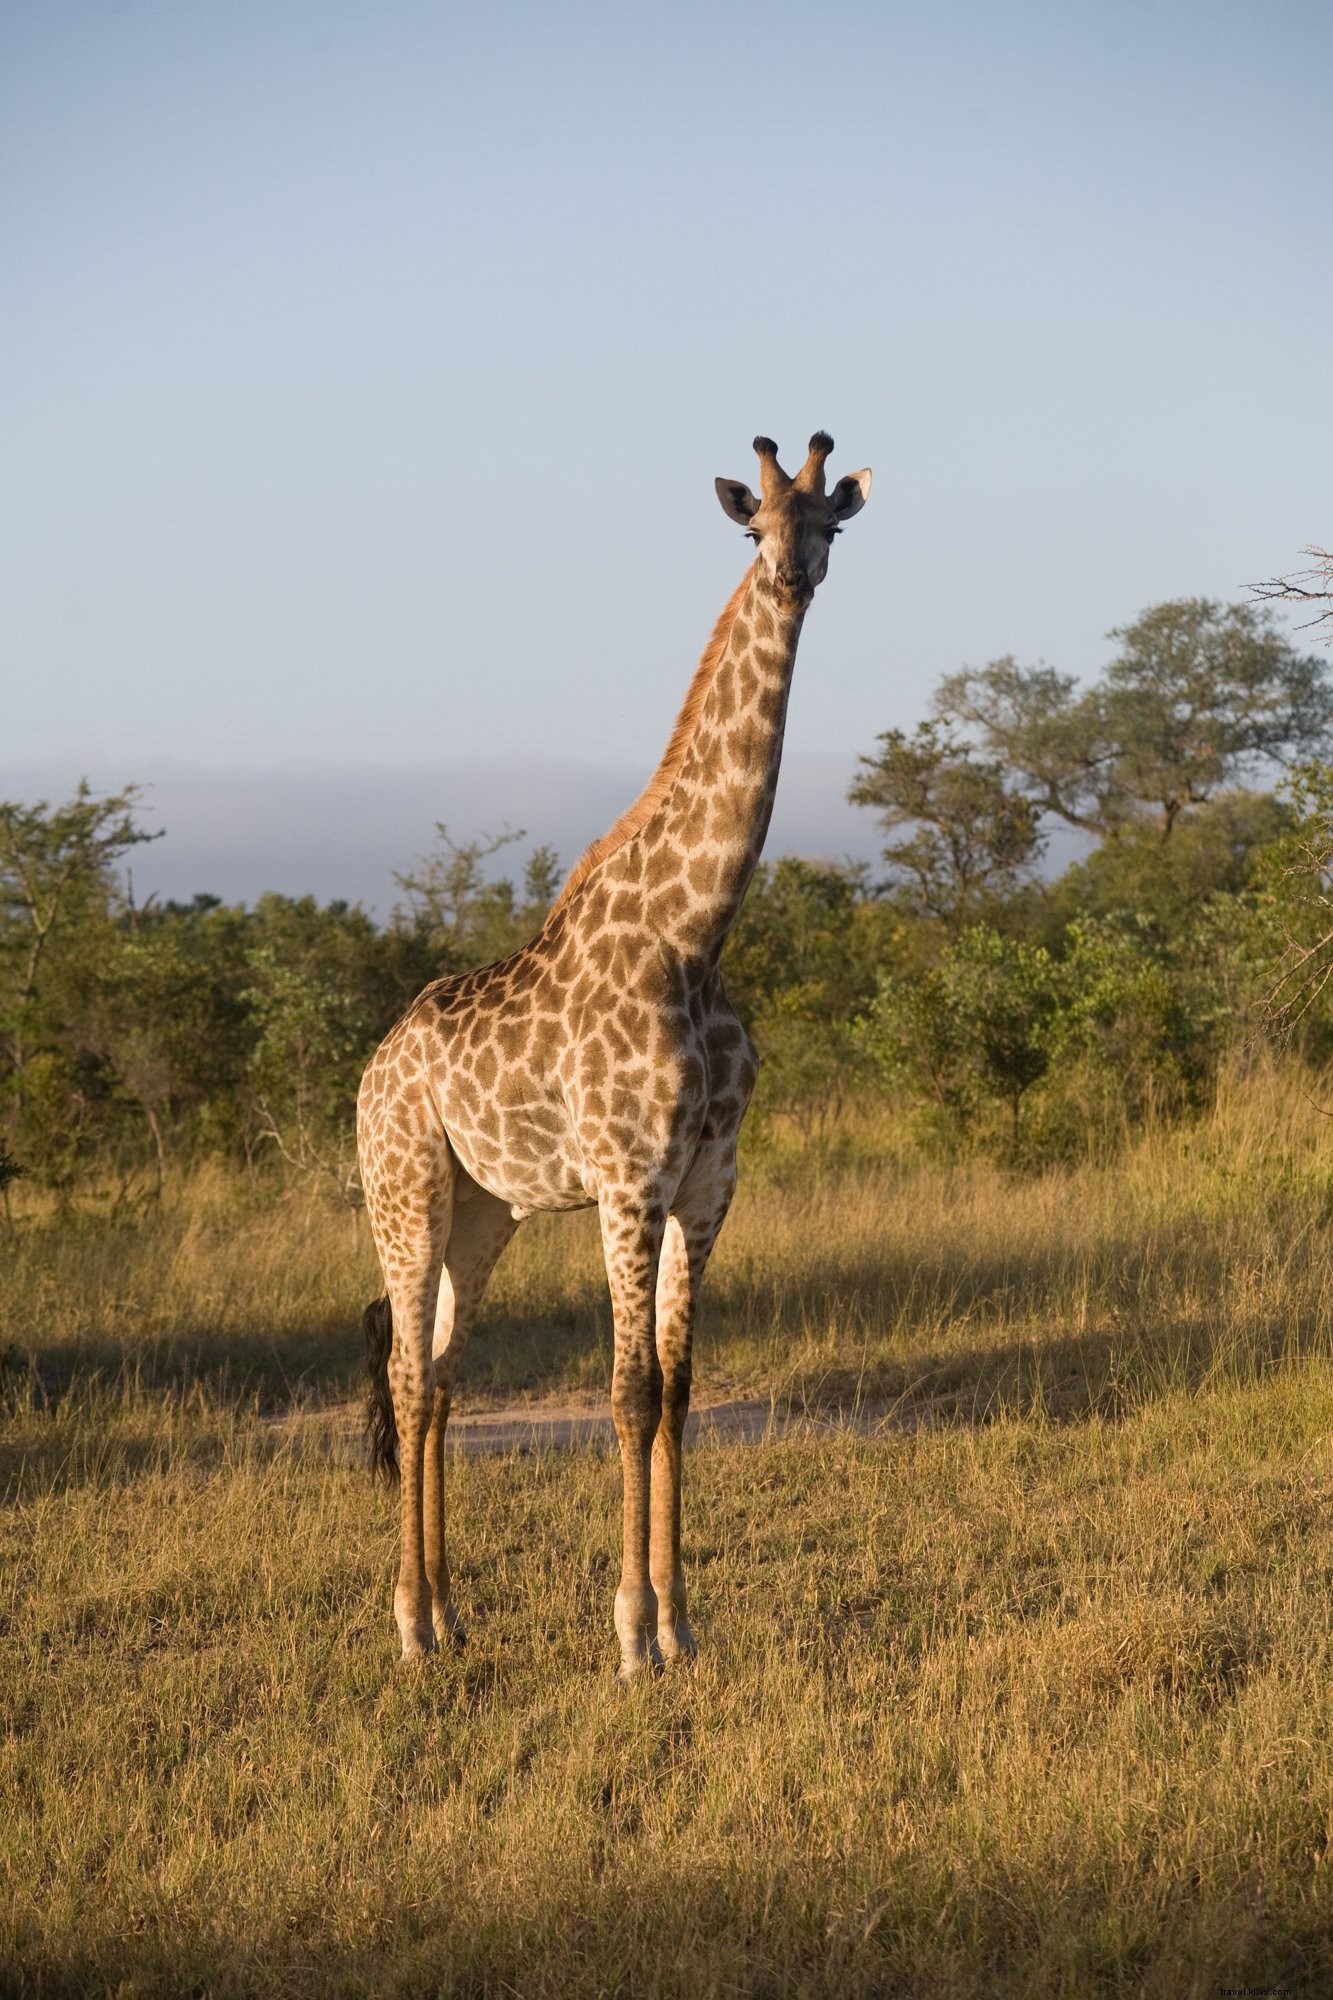 Foto do girafa no safari